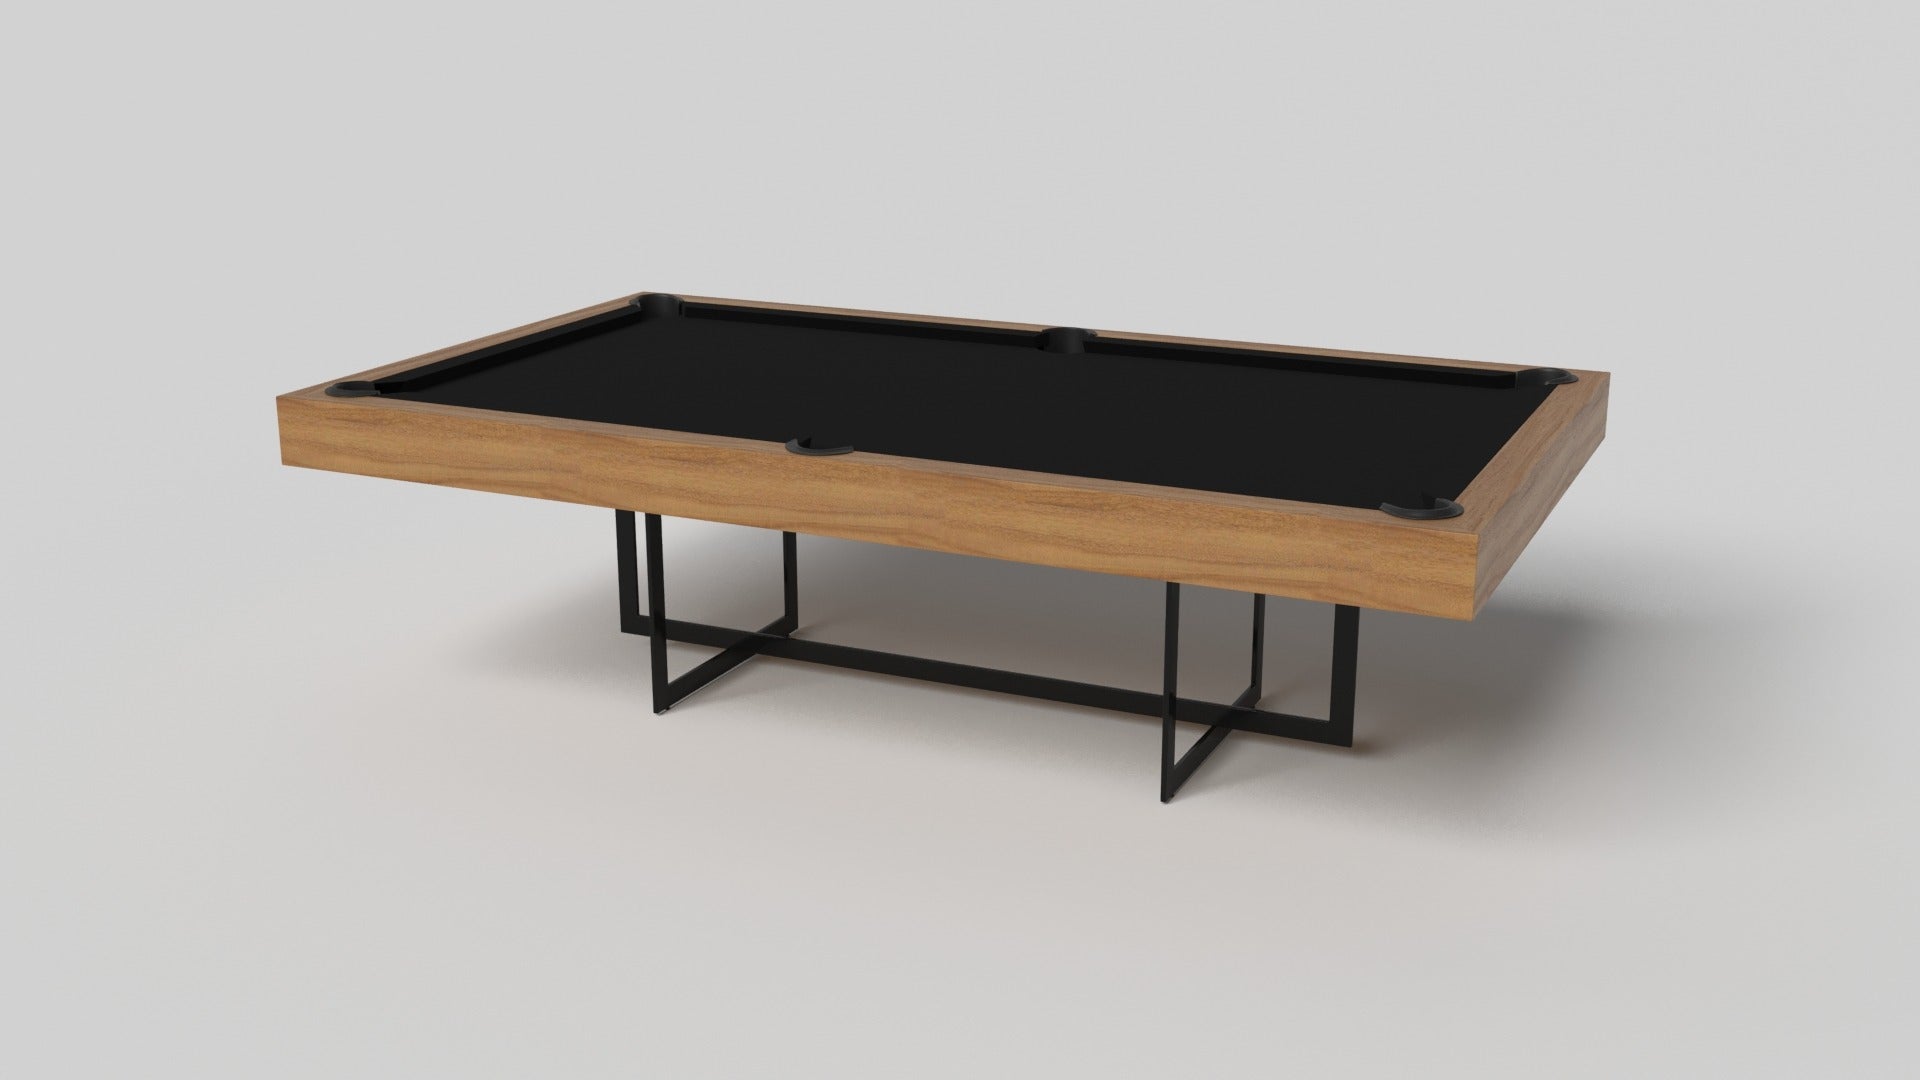 Mit seinem offenen Metallgestell ist unser Beso-Tisch ein einzigartiger Ausdruck von zeitgenössischen Formen und negativem Raum. Dieser Poolbillardtisch wird von unseren Meisterhandwerkern in Handarbeit hergestellt und hat eine rechteckige Basis,